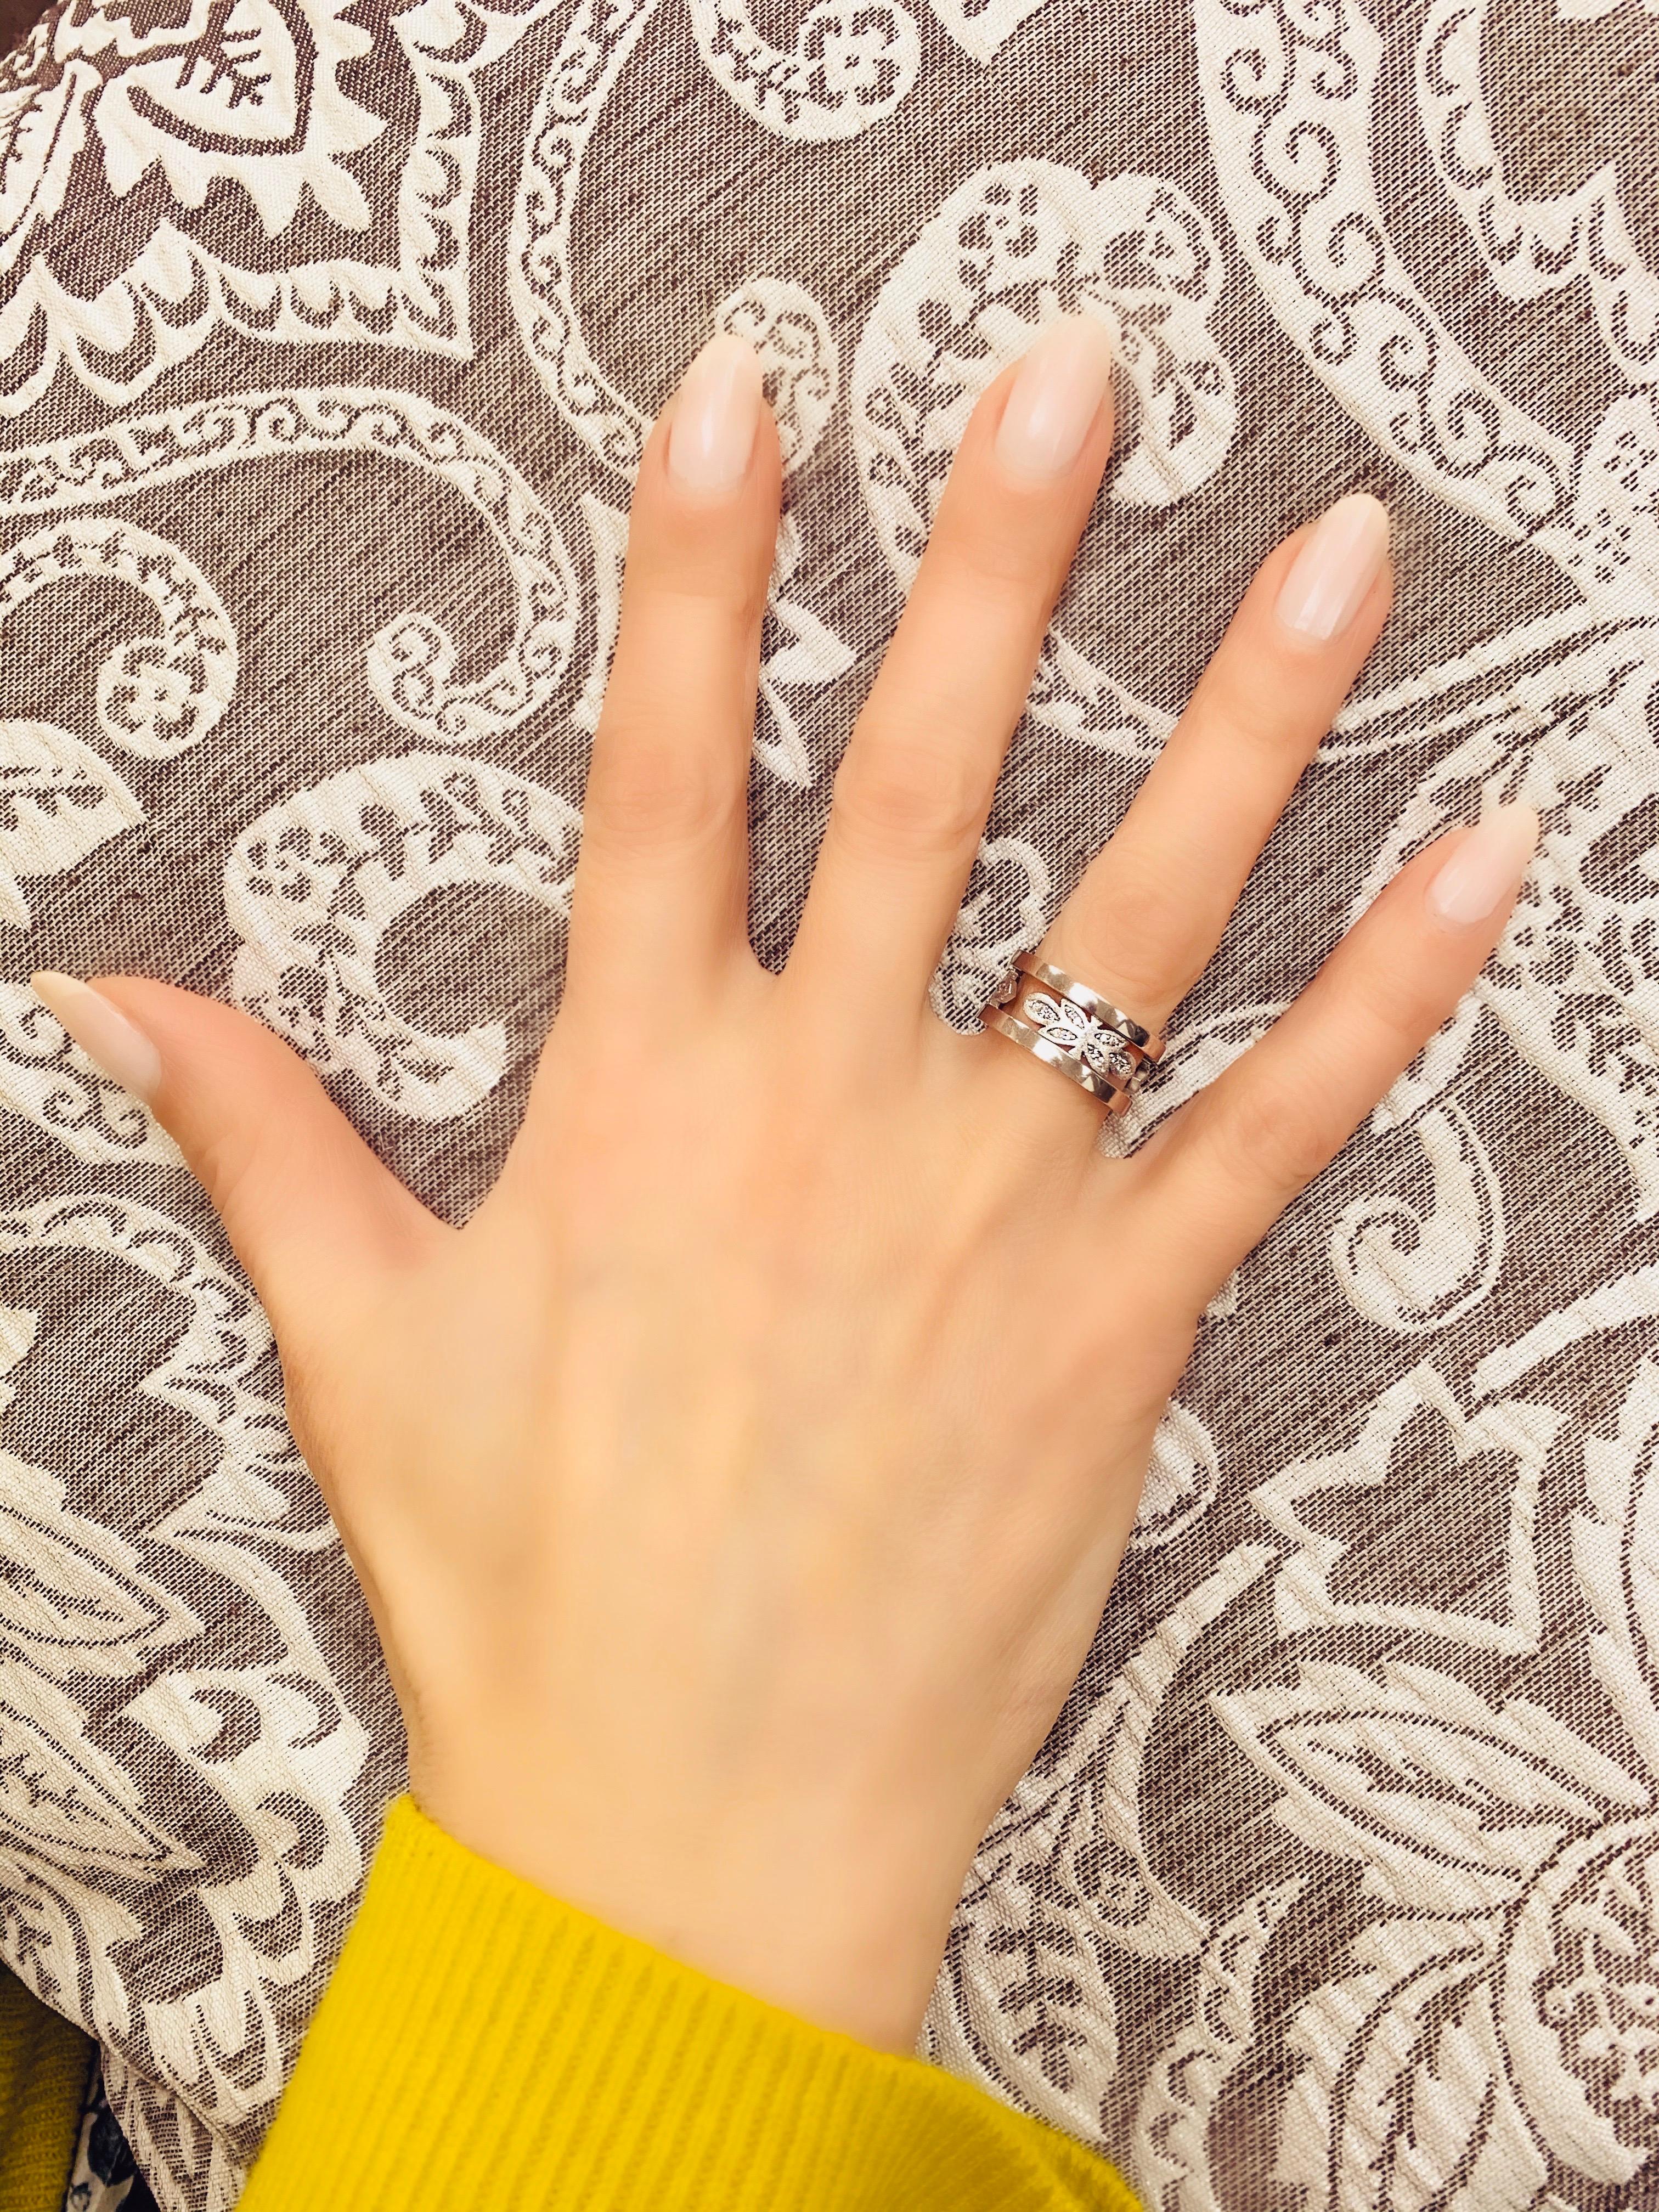 Alex Soldier Diamantband aus 18 Karat Weißgold mit charakteristischen Metallarbeiten. Handgefertigt mit Liebe in NYC aus verantwortungsvoll beschafften Materialien. Weiße Diamanten: 42 Steine, Gesamtkaratgewicht: 0,3 ct. Ringgröße: 6,5. Ergänzende